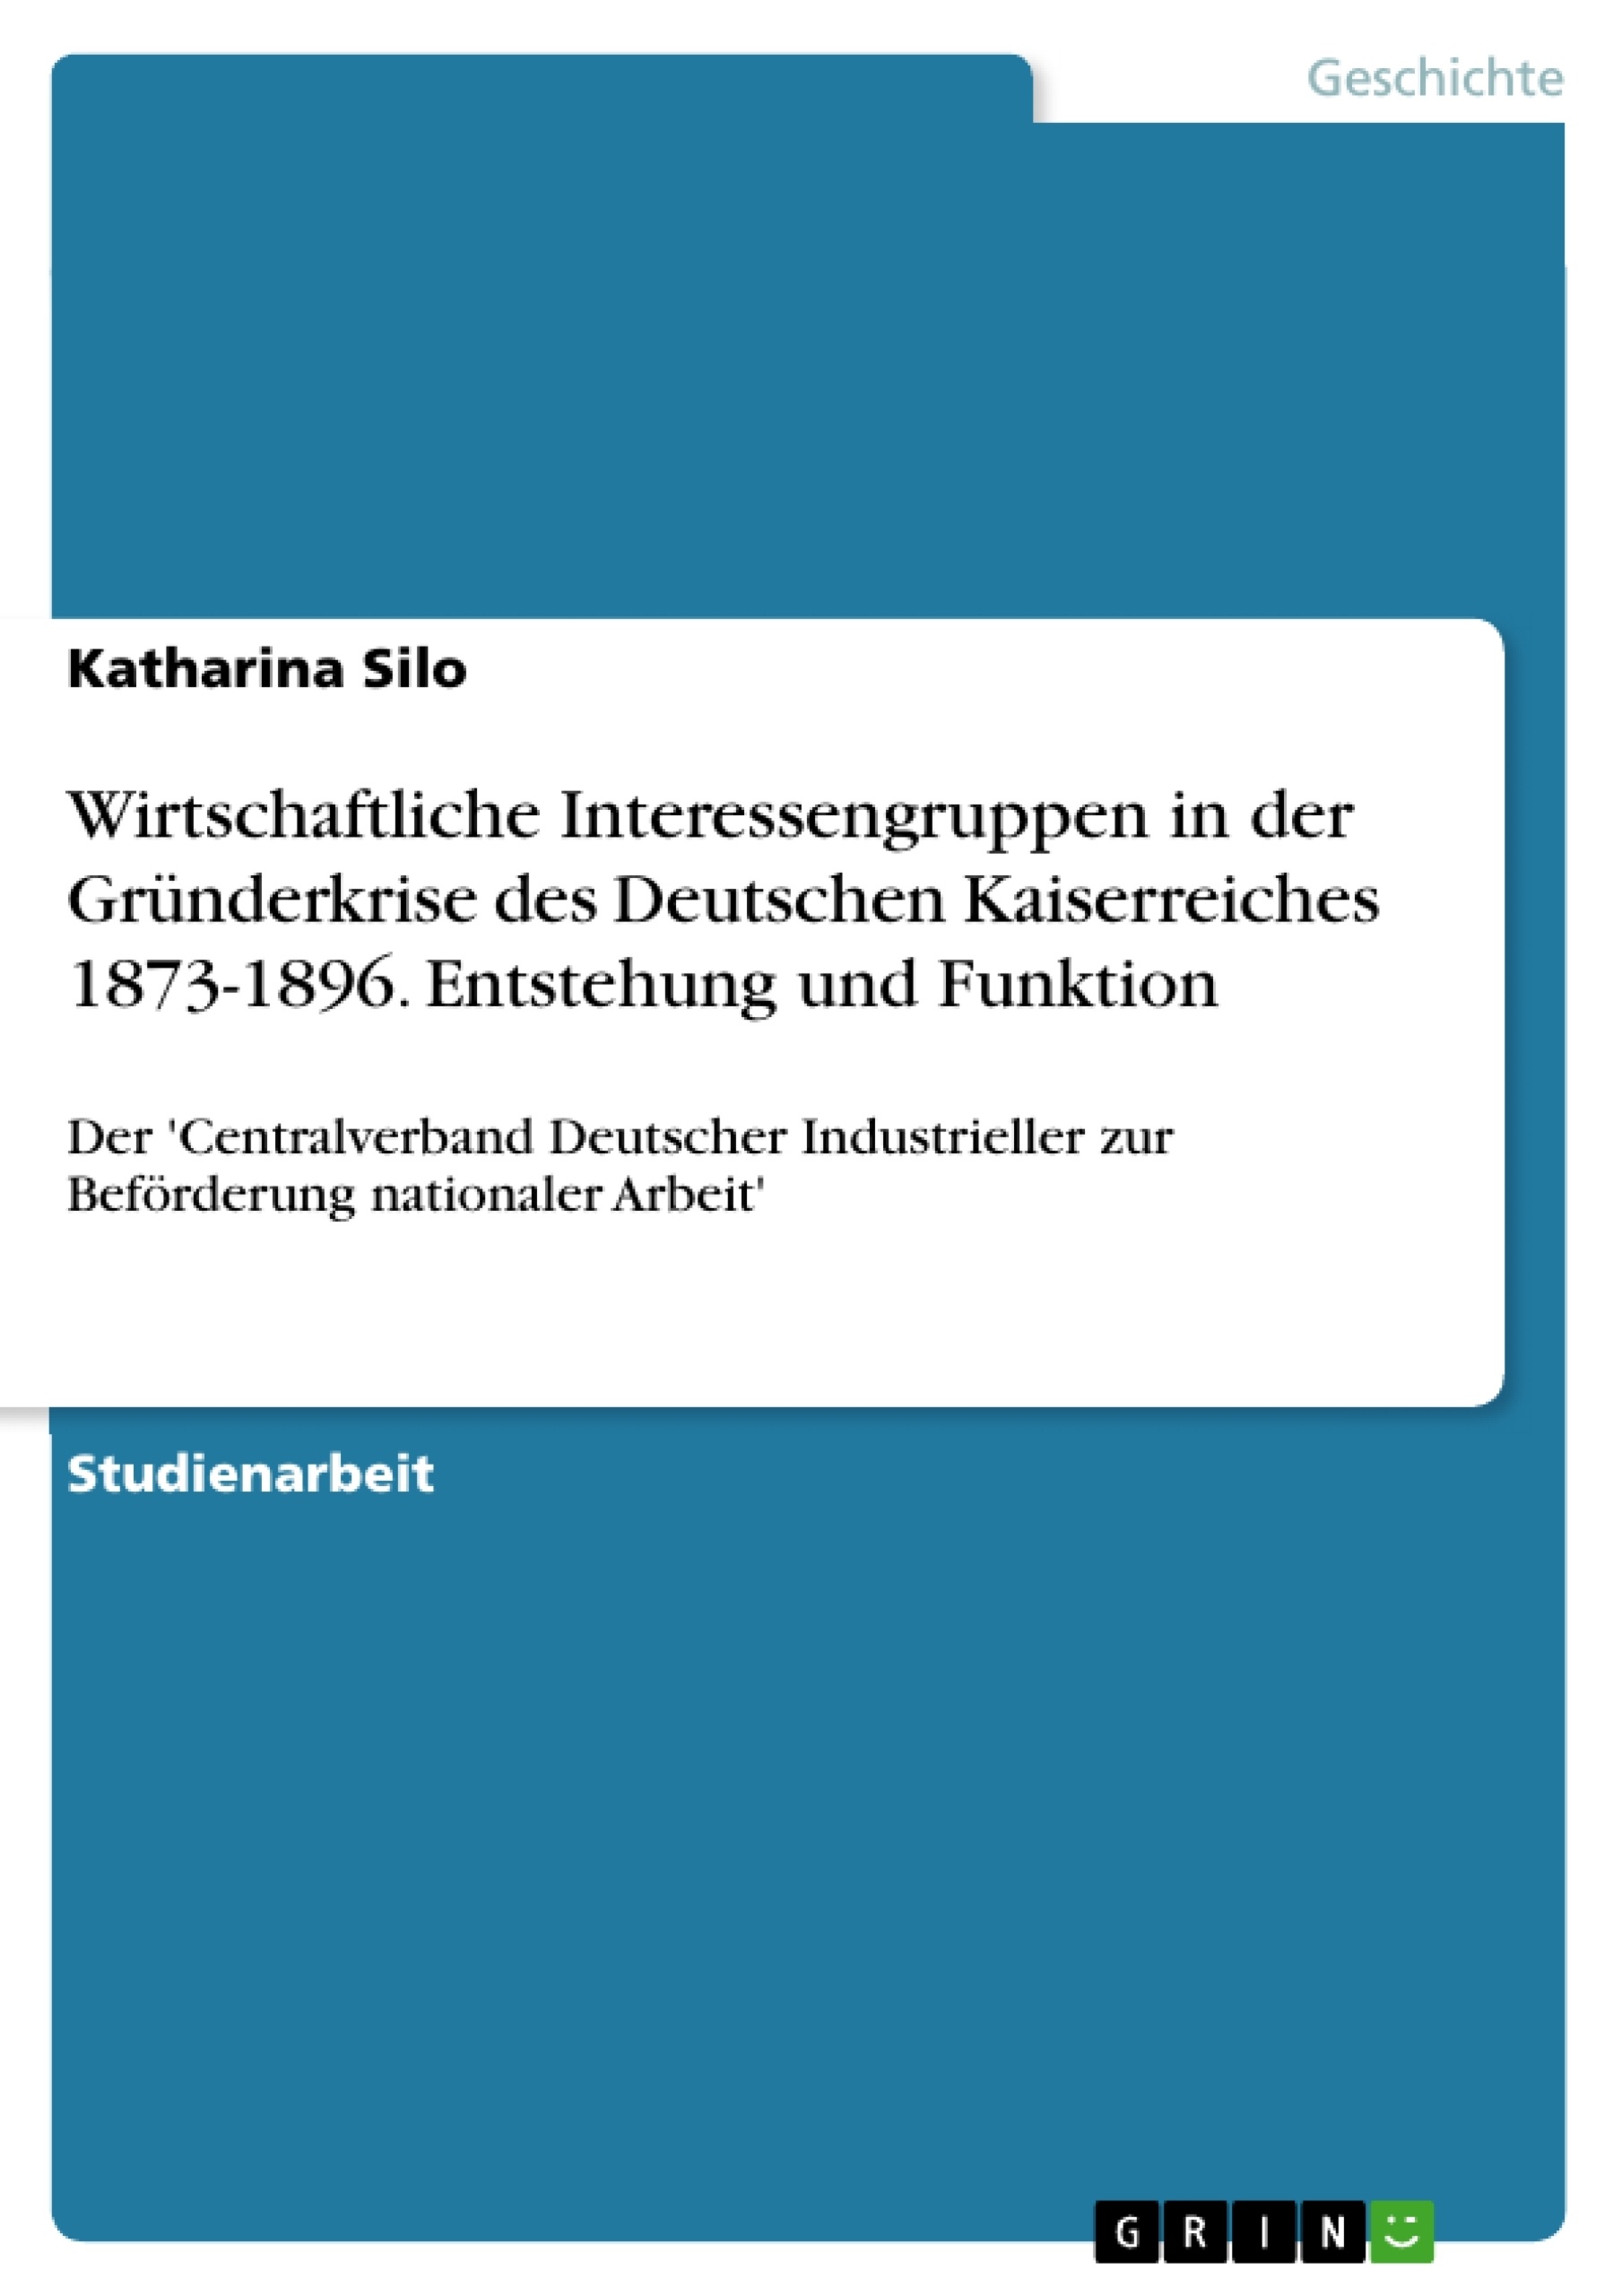 Título: Wirtschaftliche Interessengruppen in der Gründerkrise des Deutschen Kaiserreiches 1873-1896. Entstehung und Funktion